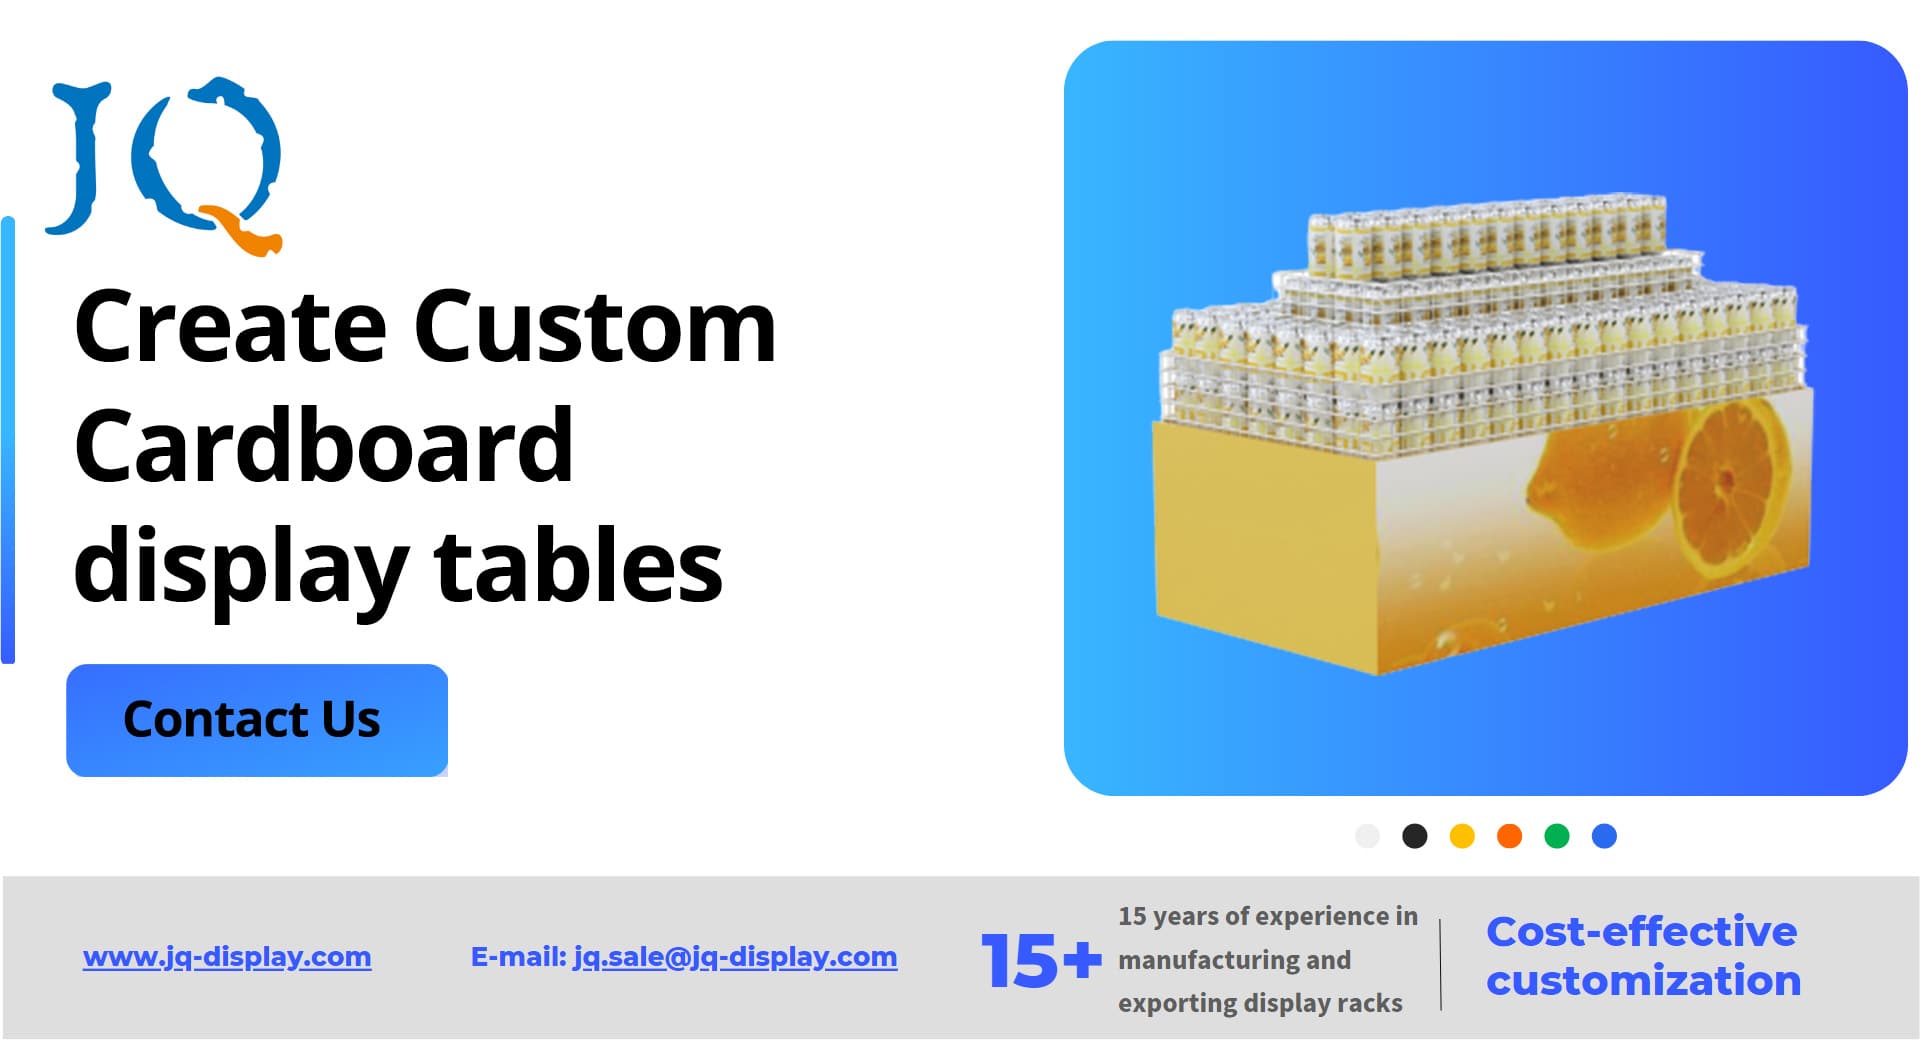 Create Custom display tables